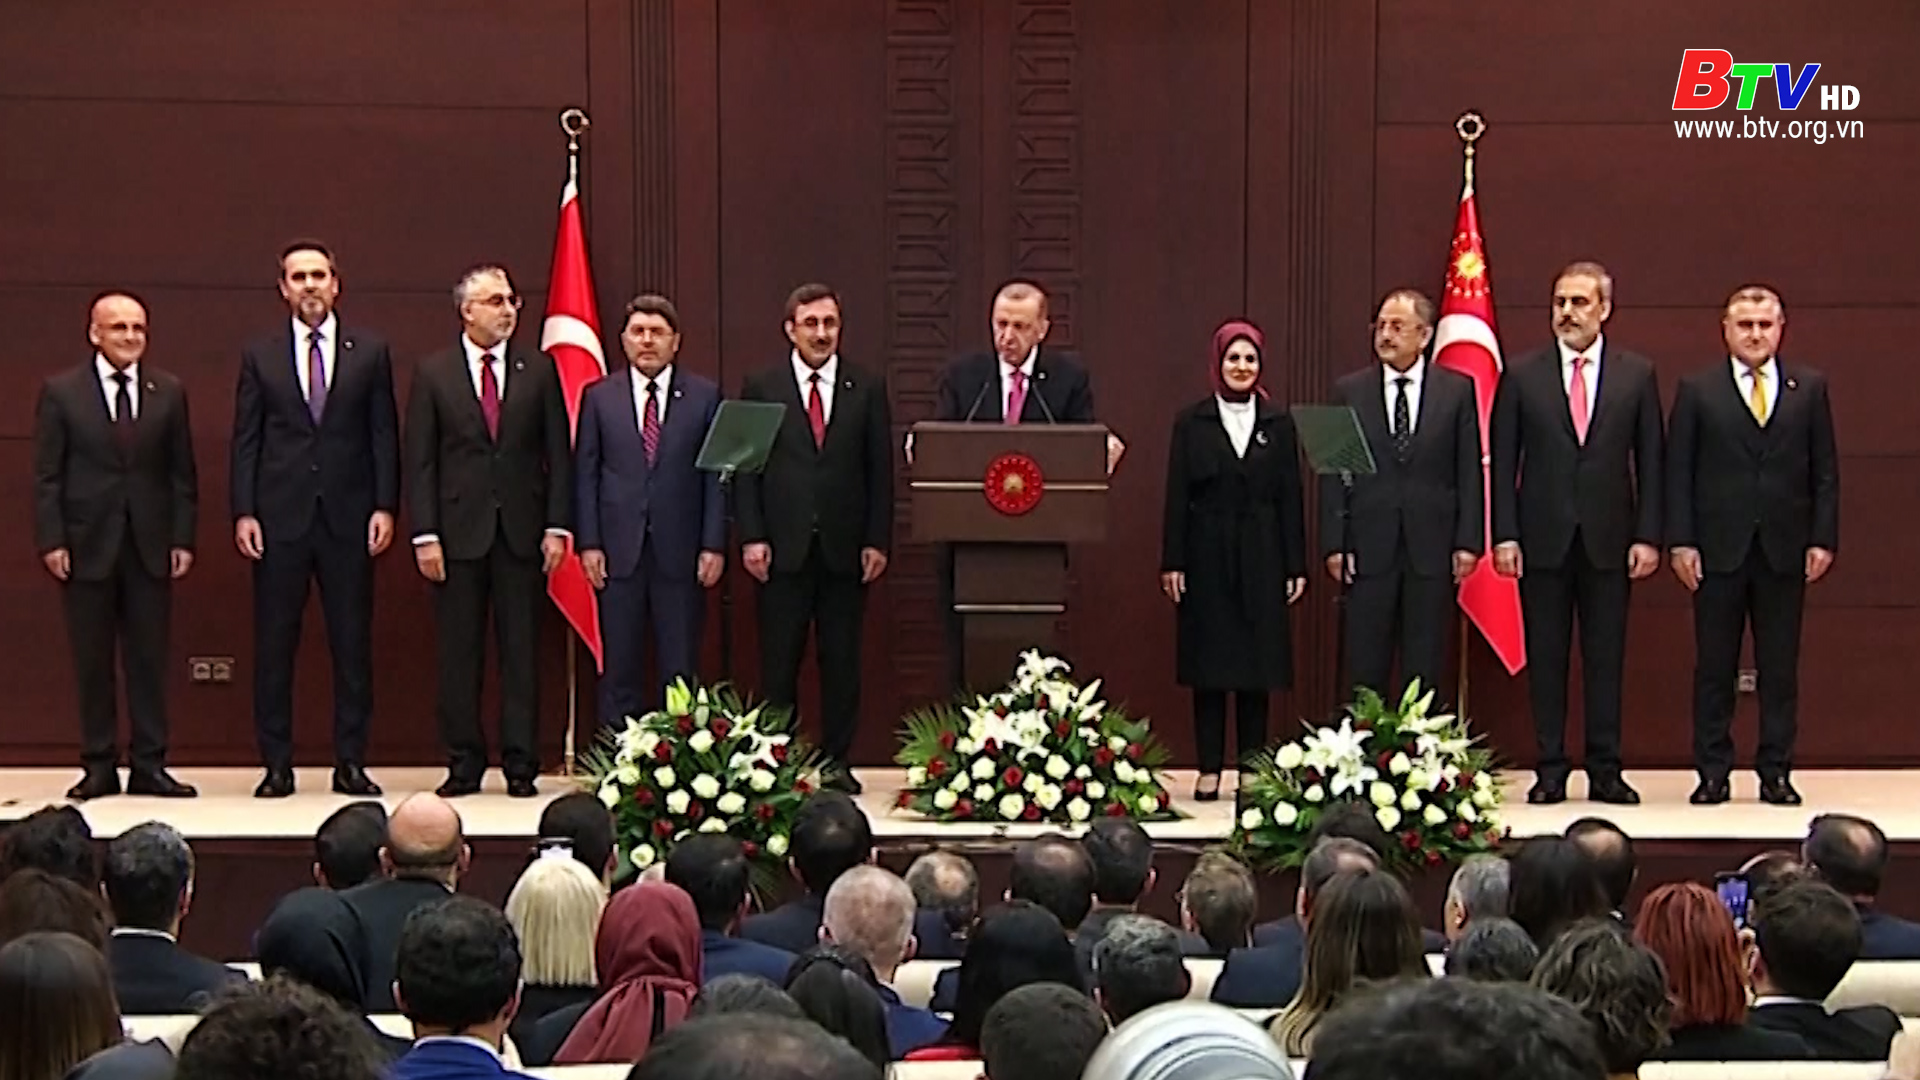 Tổng thống Thổ Nhĩ Kỳ bổ nhiệm nội các mới